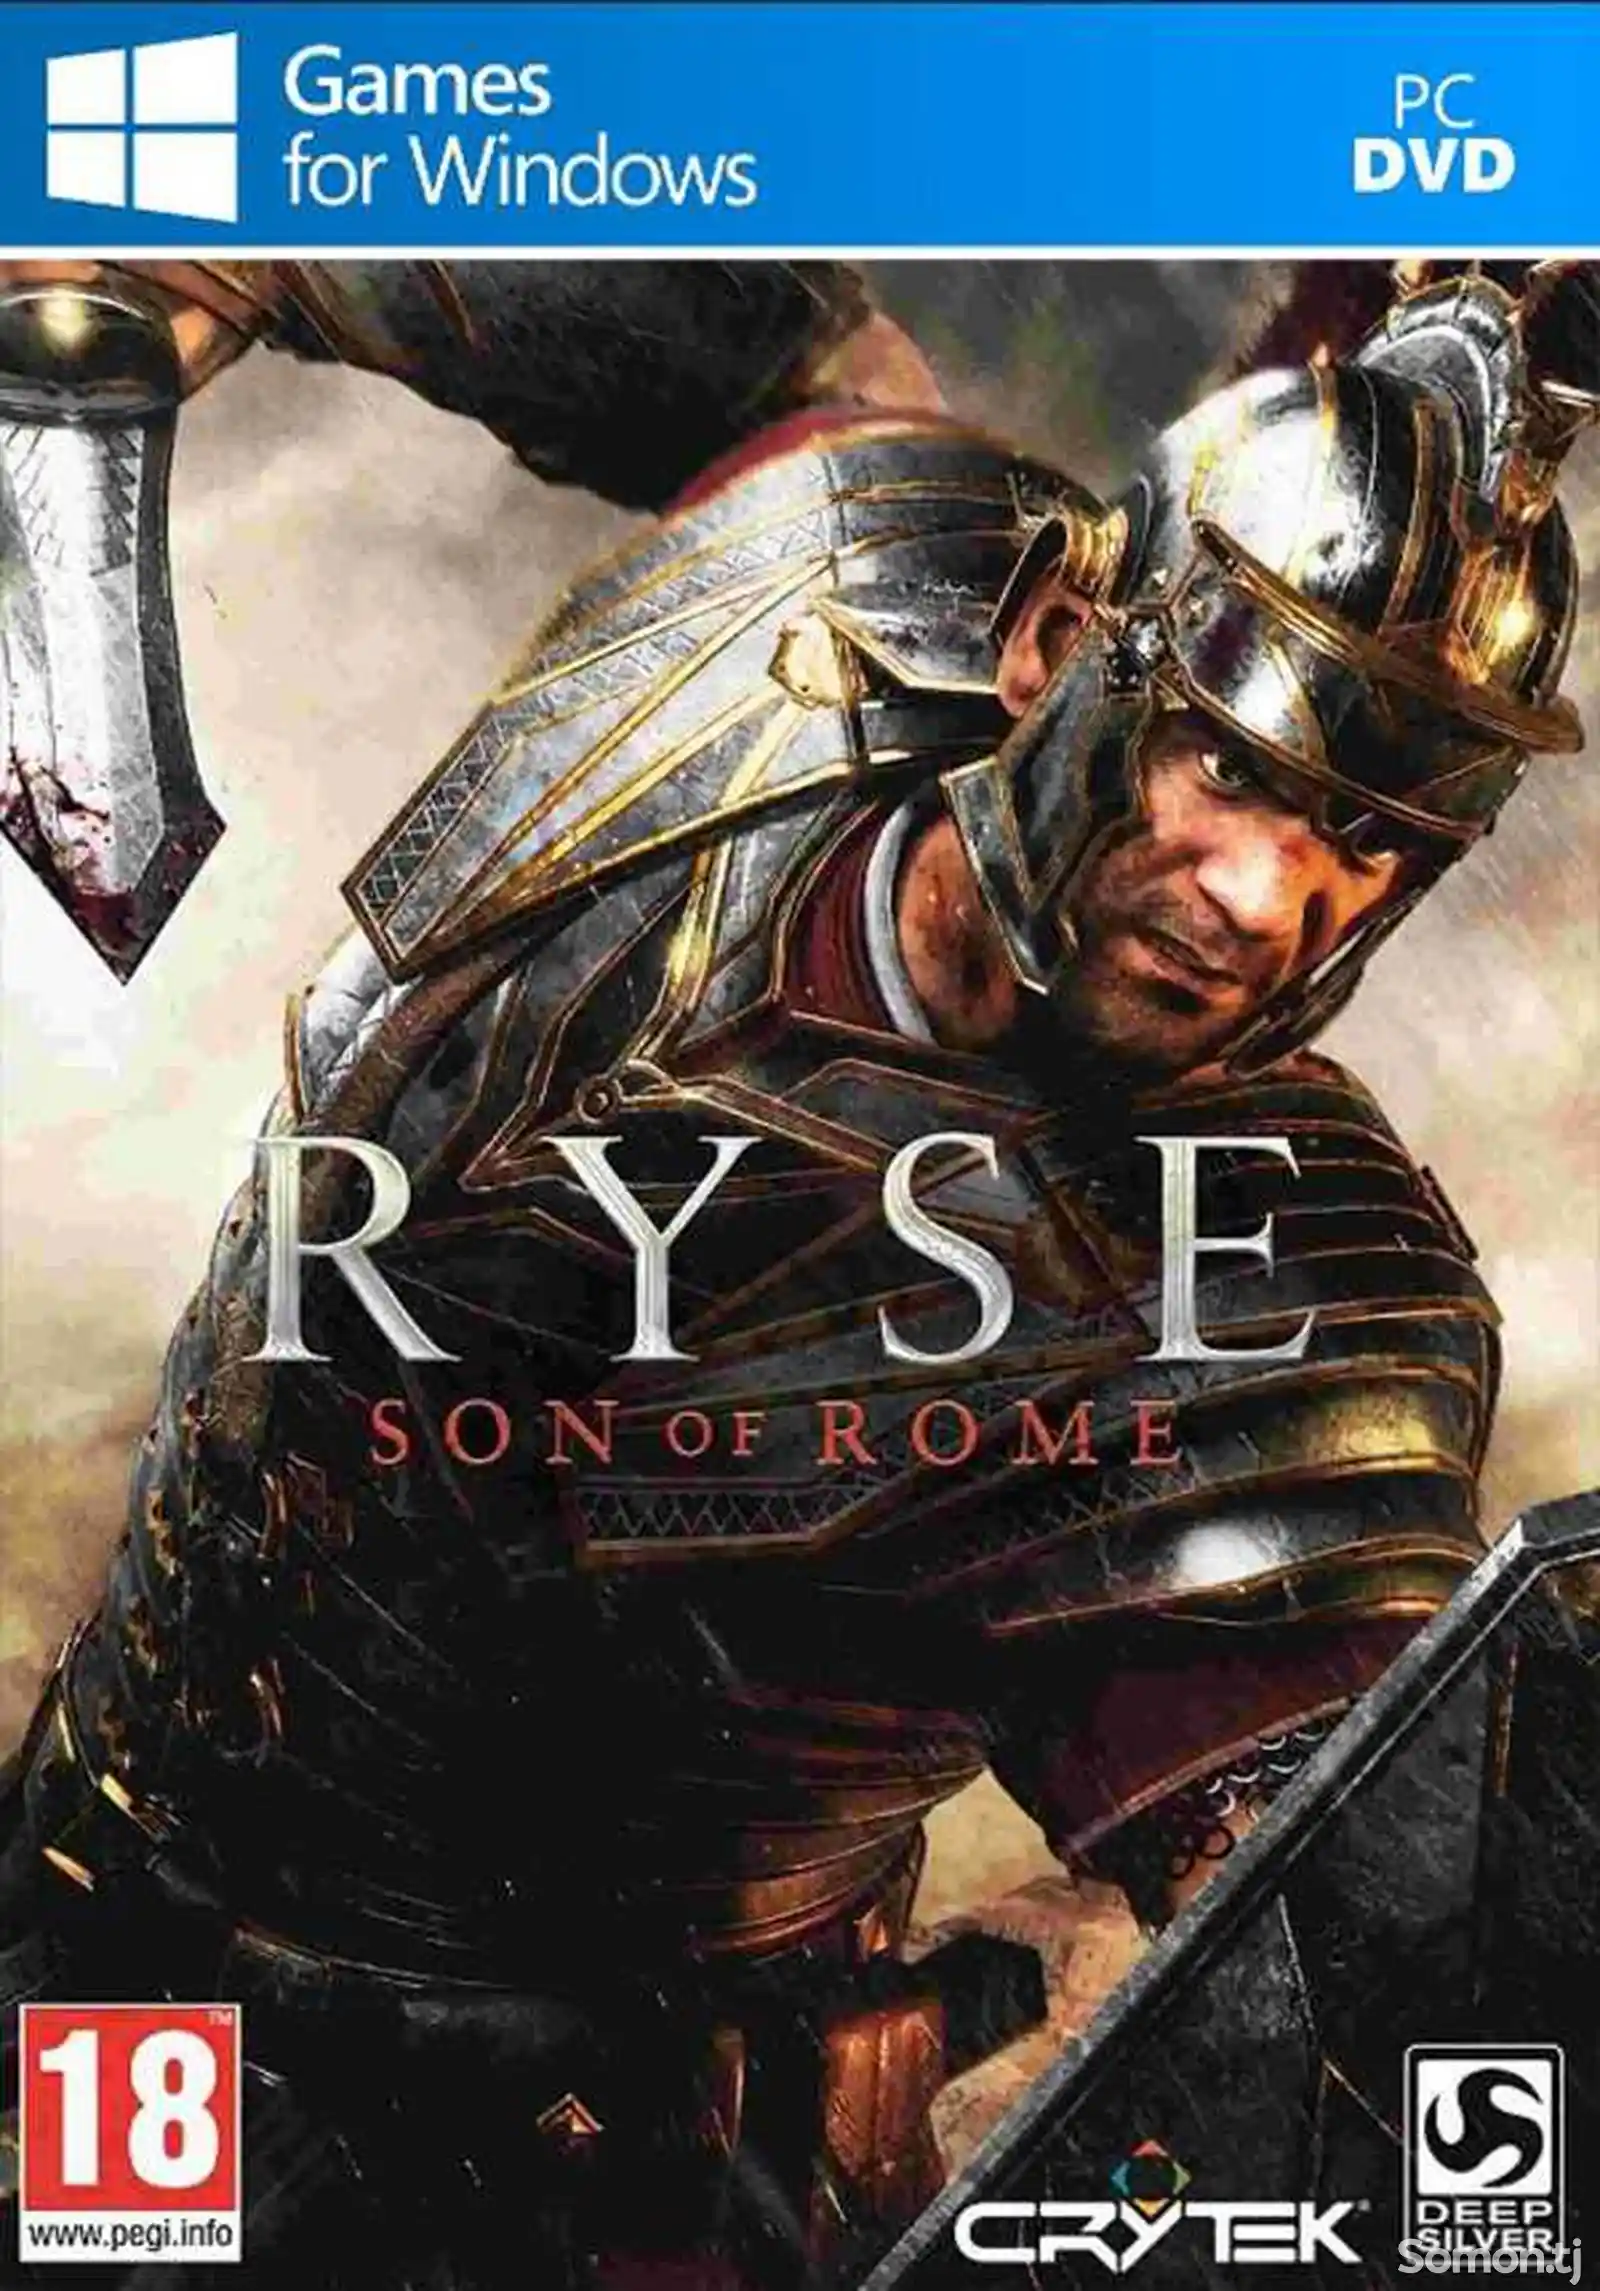 Игра Ryse son of rome для компьютера-пк-pc-1